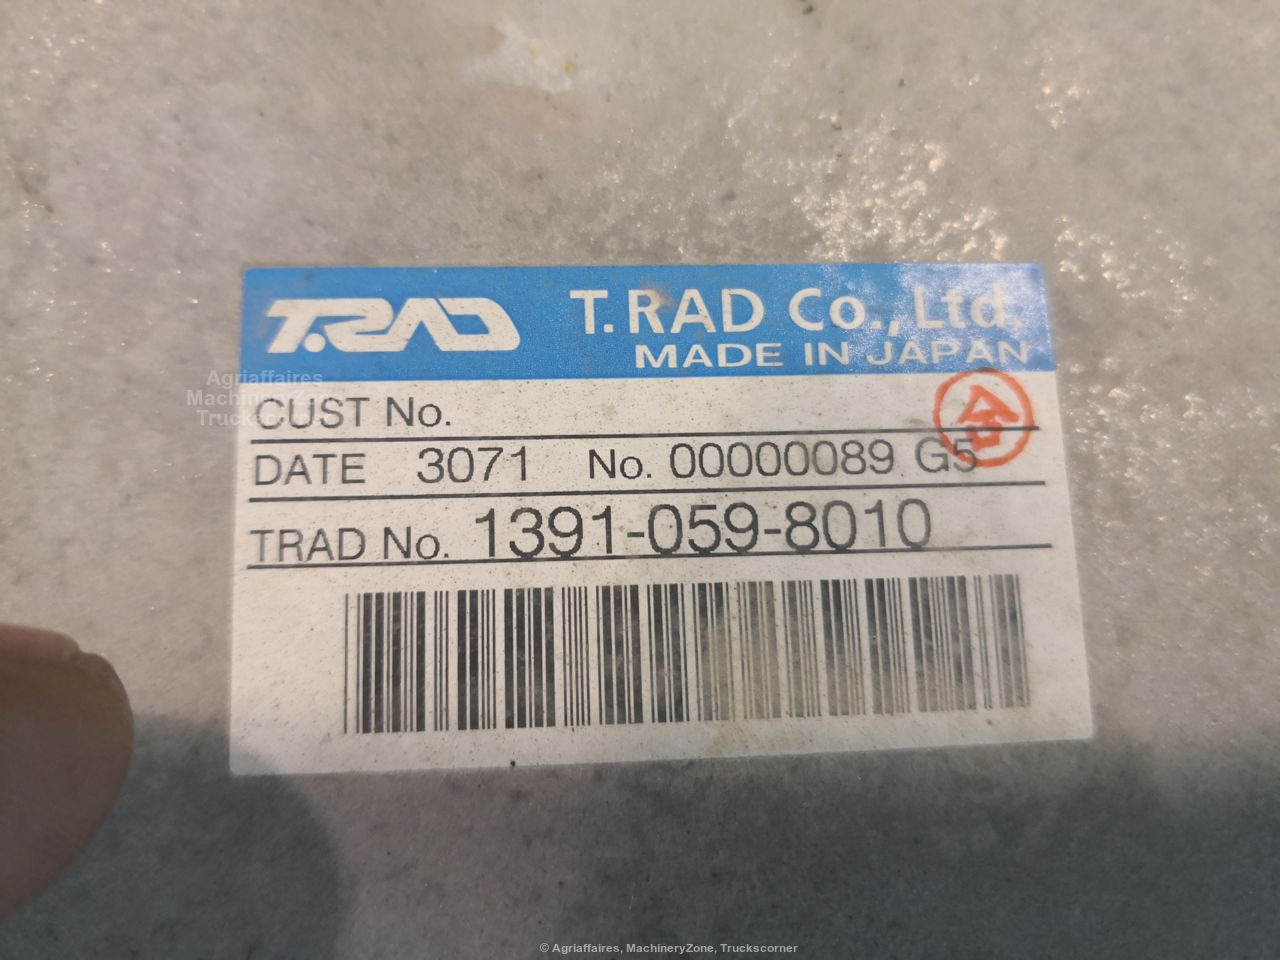 RADIATORE CASE  CX245D 13910598010 - Radiator for Excavator: picture 4